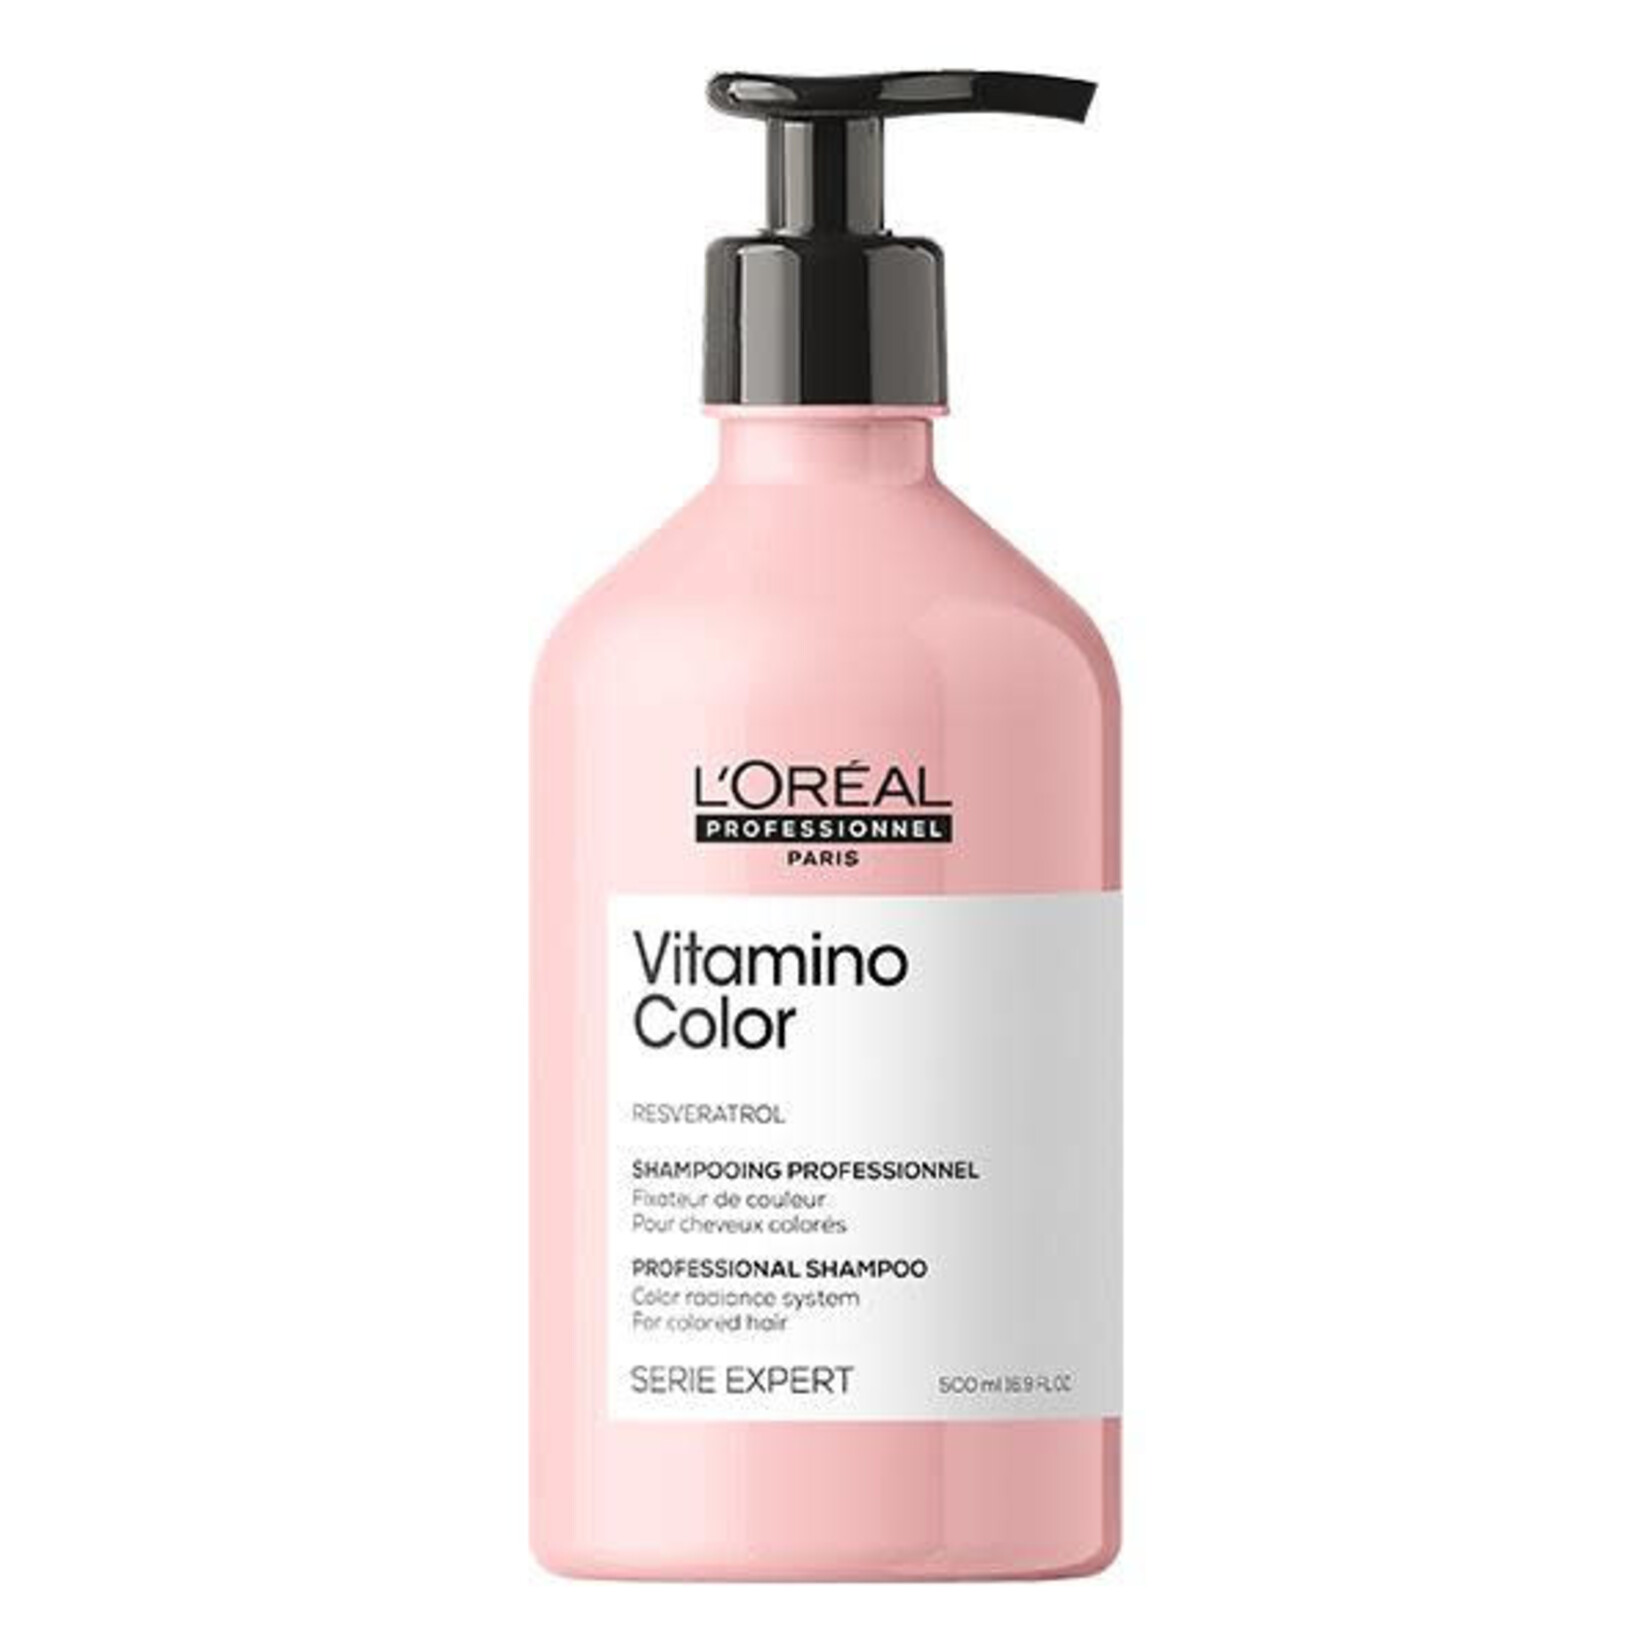 L'Oréal L'Oréal Professionnel - Vitamino Color - Colour Protection Shampoo 500ml